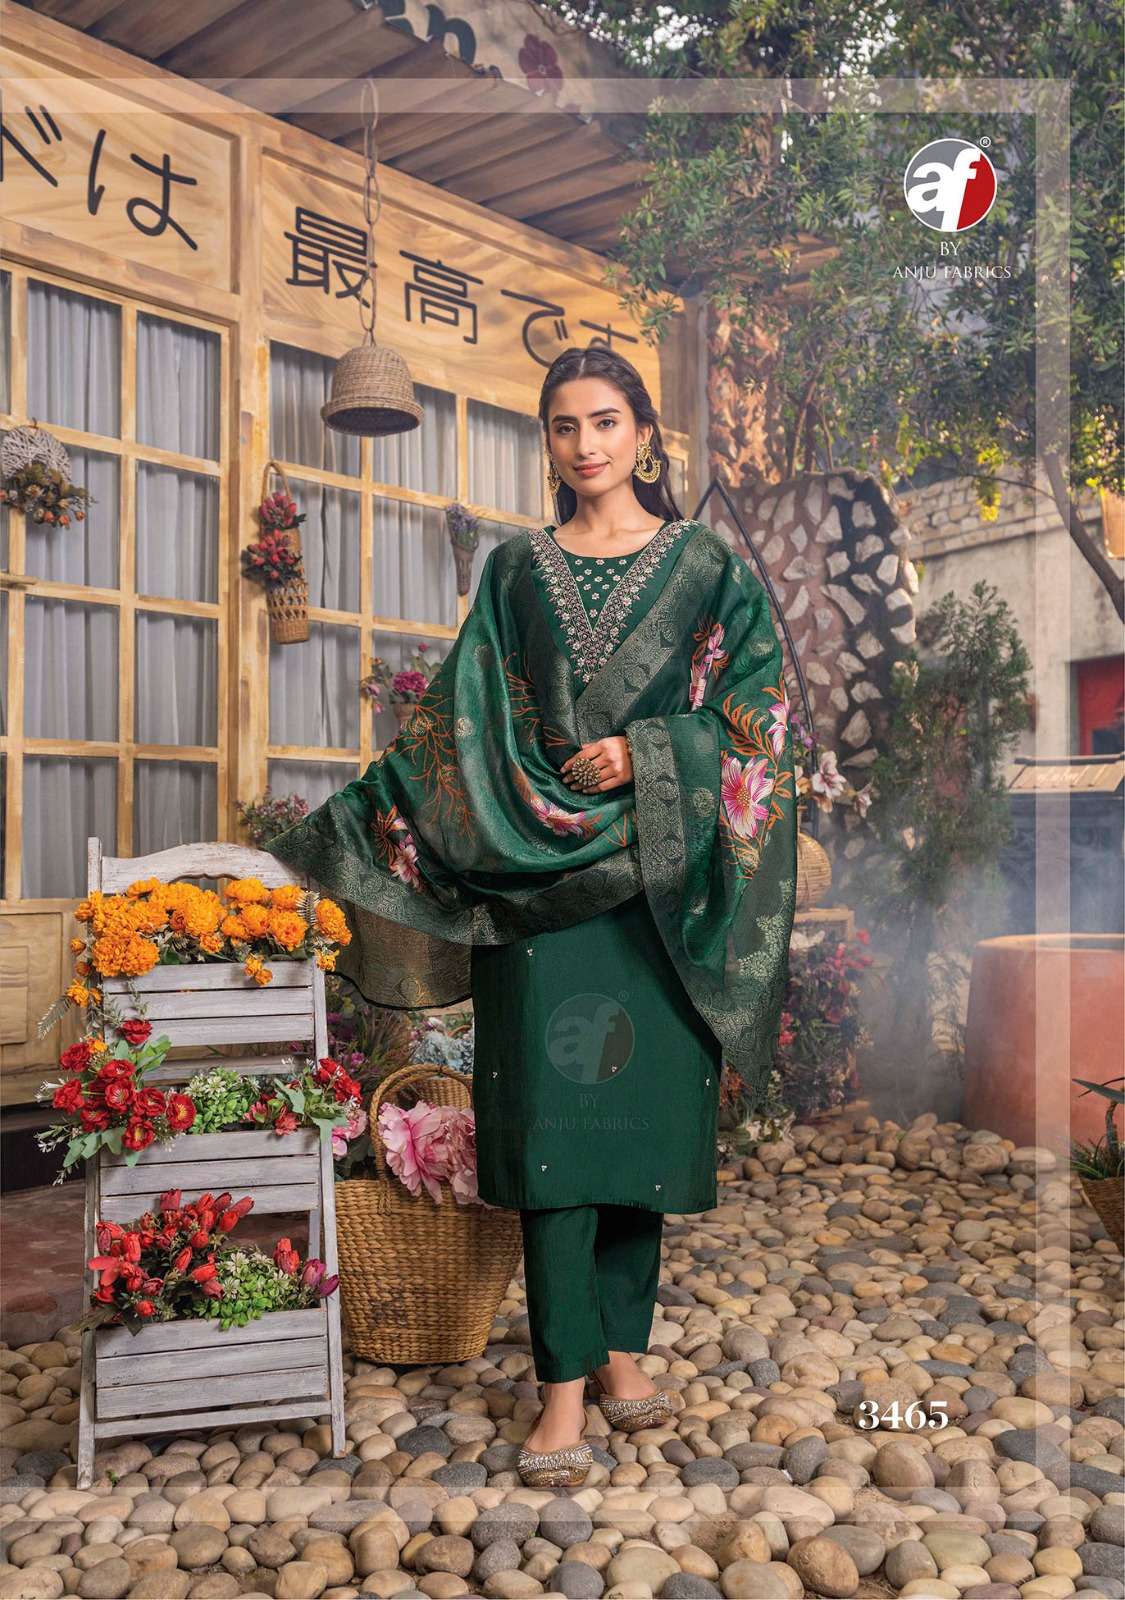 Anju Fabrics Shararat vol -5 Kurti Wholesale catalog